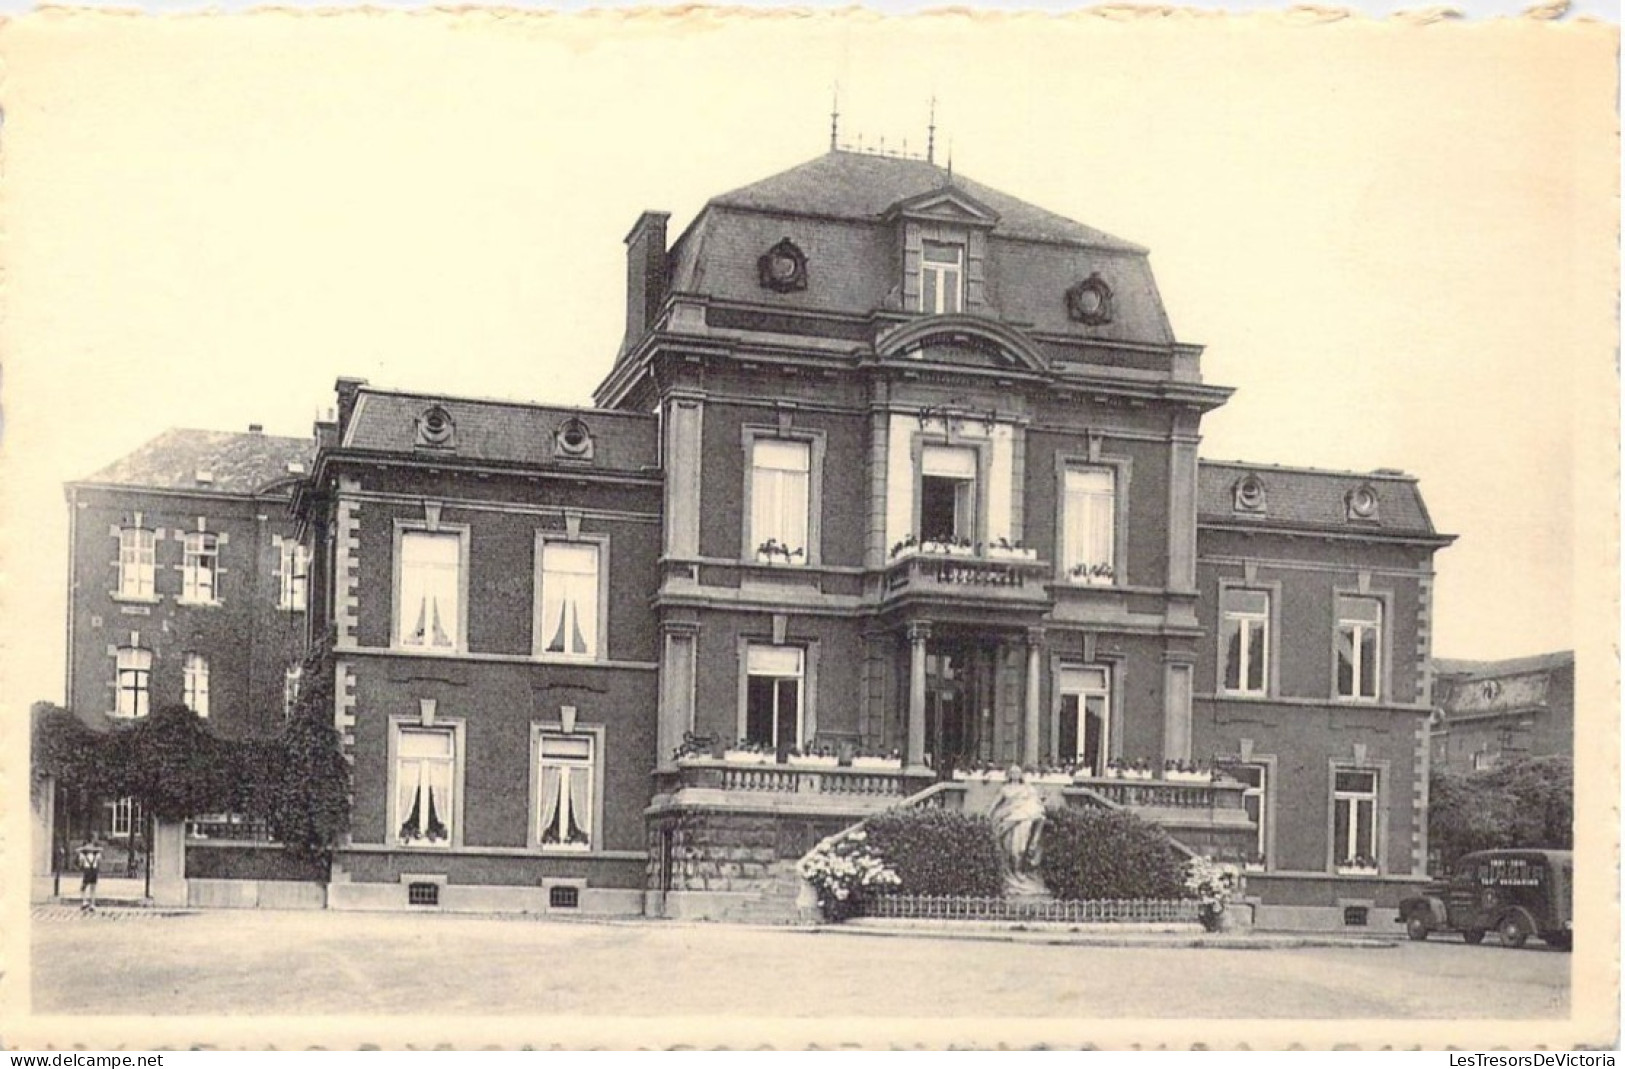 BELGIQUE - Jambes - Hôtel De Ville - Carte Postale Ancienne - Namur